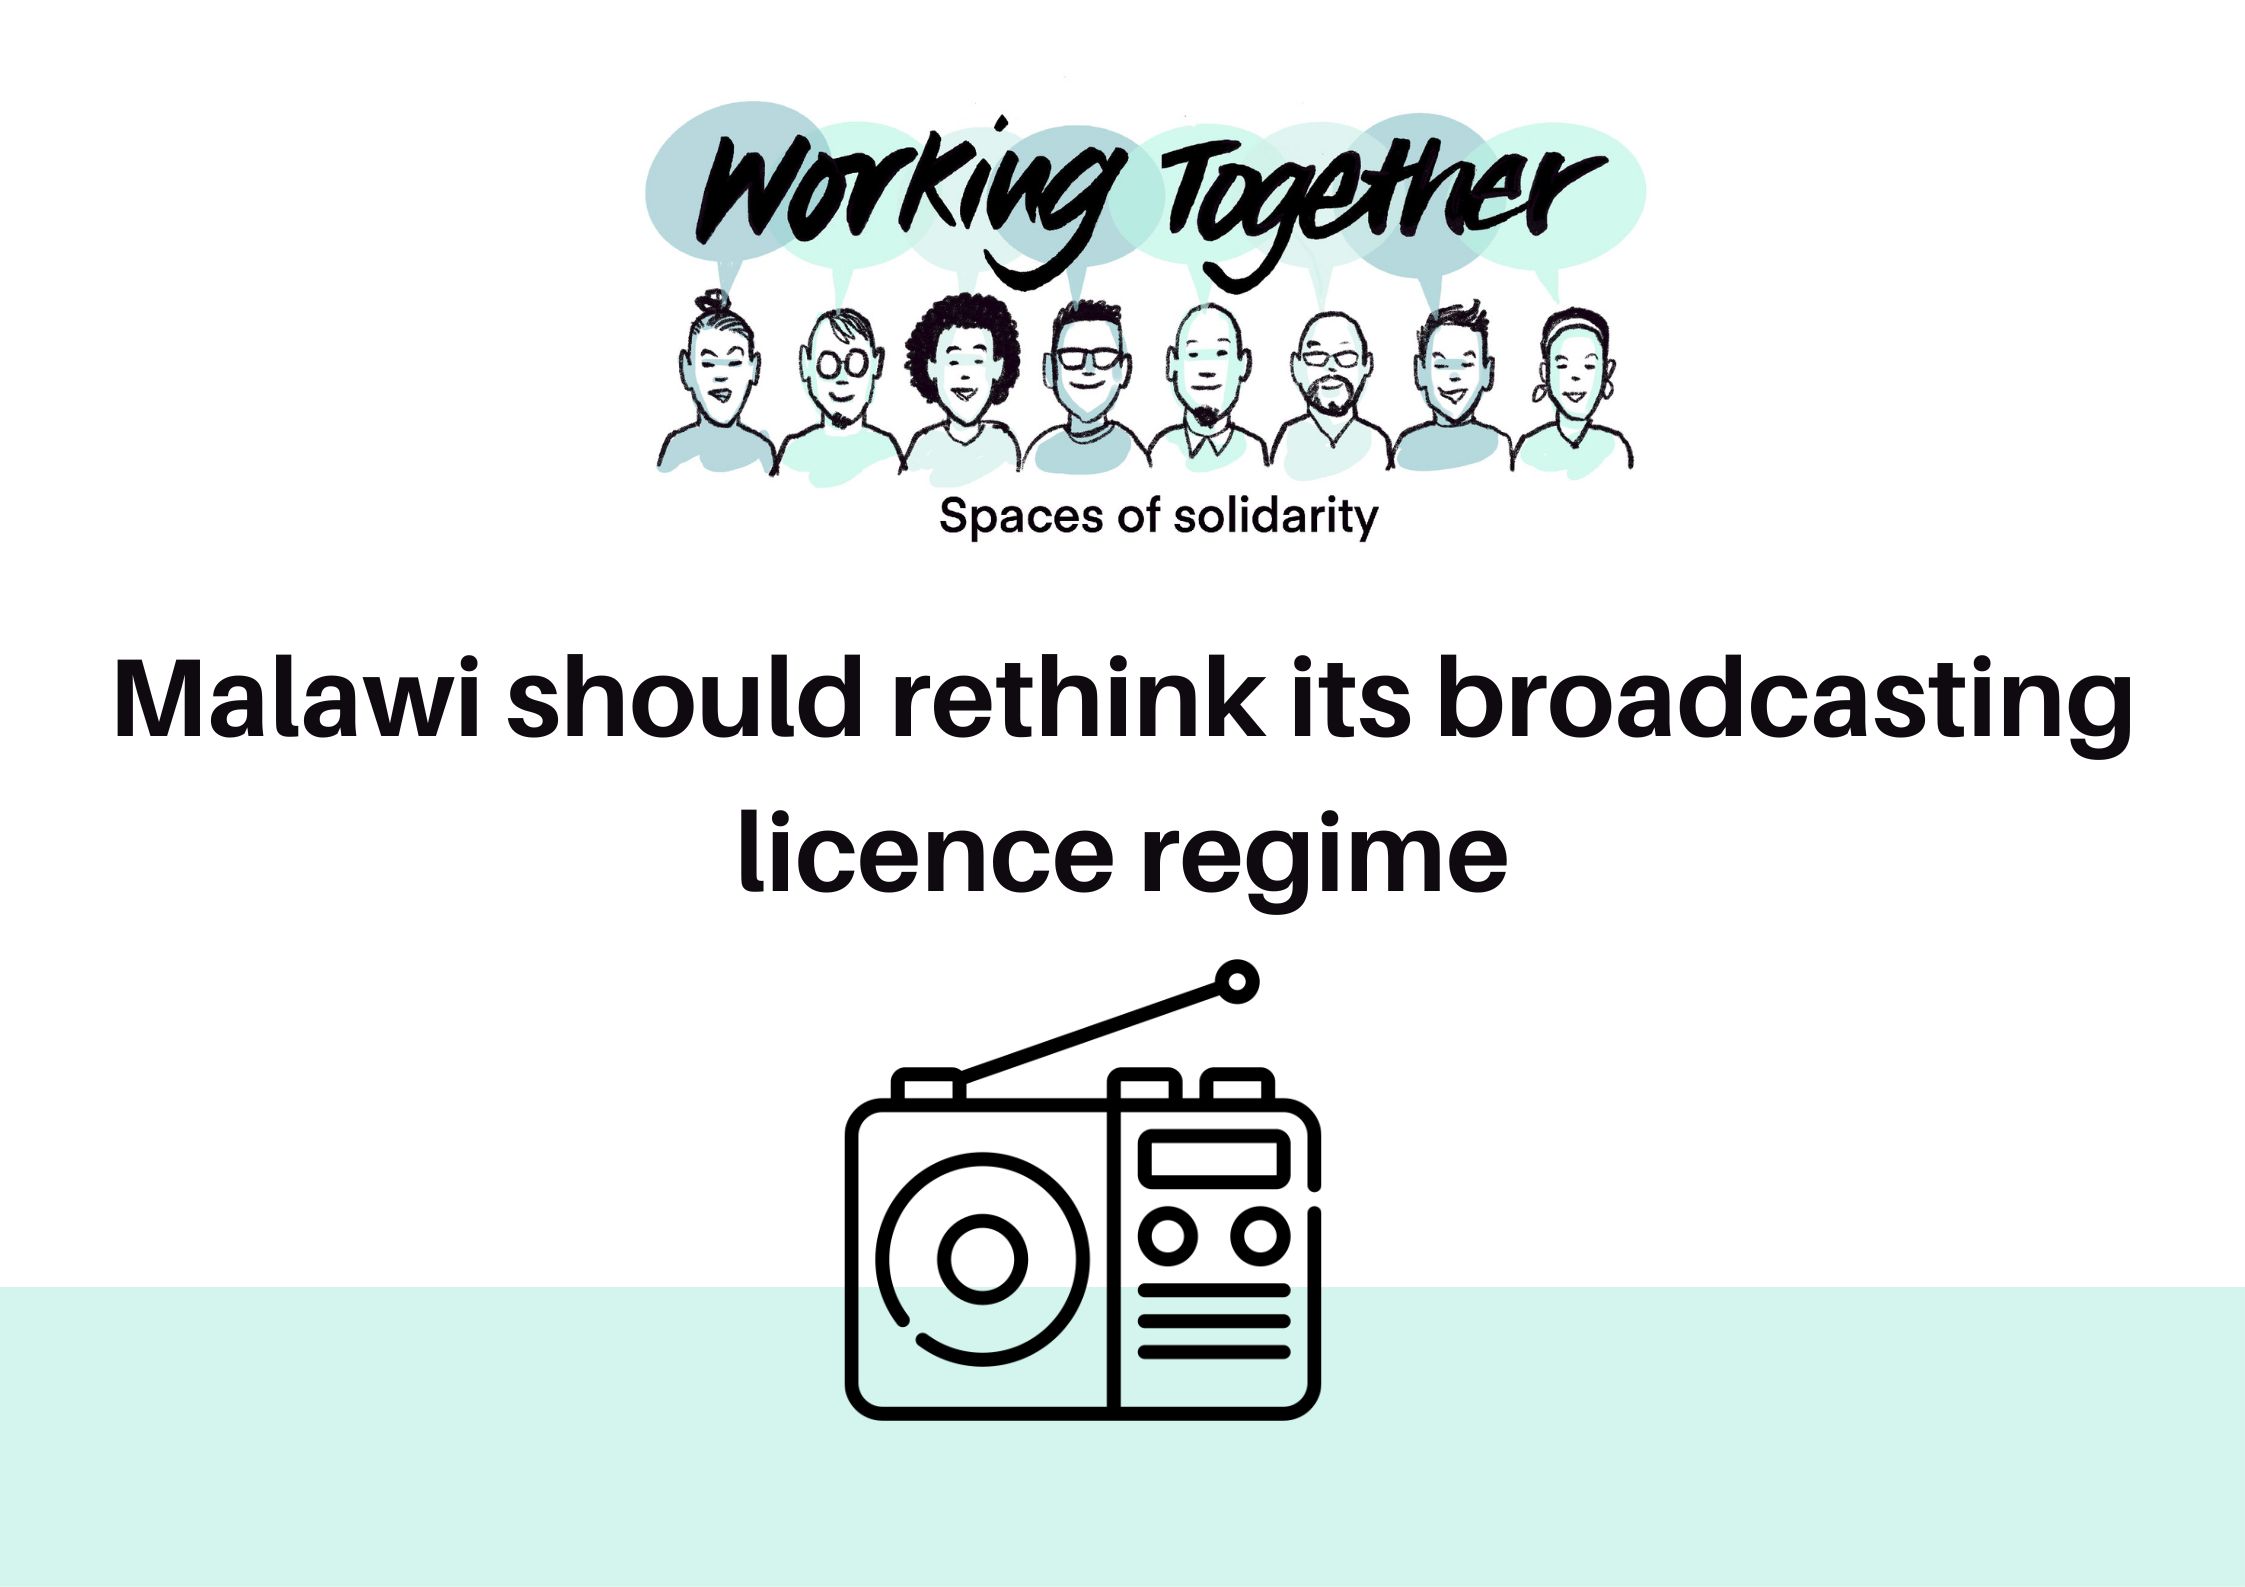 Malawi should rethink its broadcasting licence regime